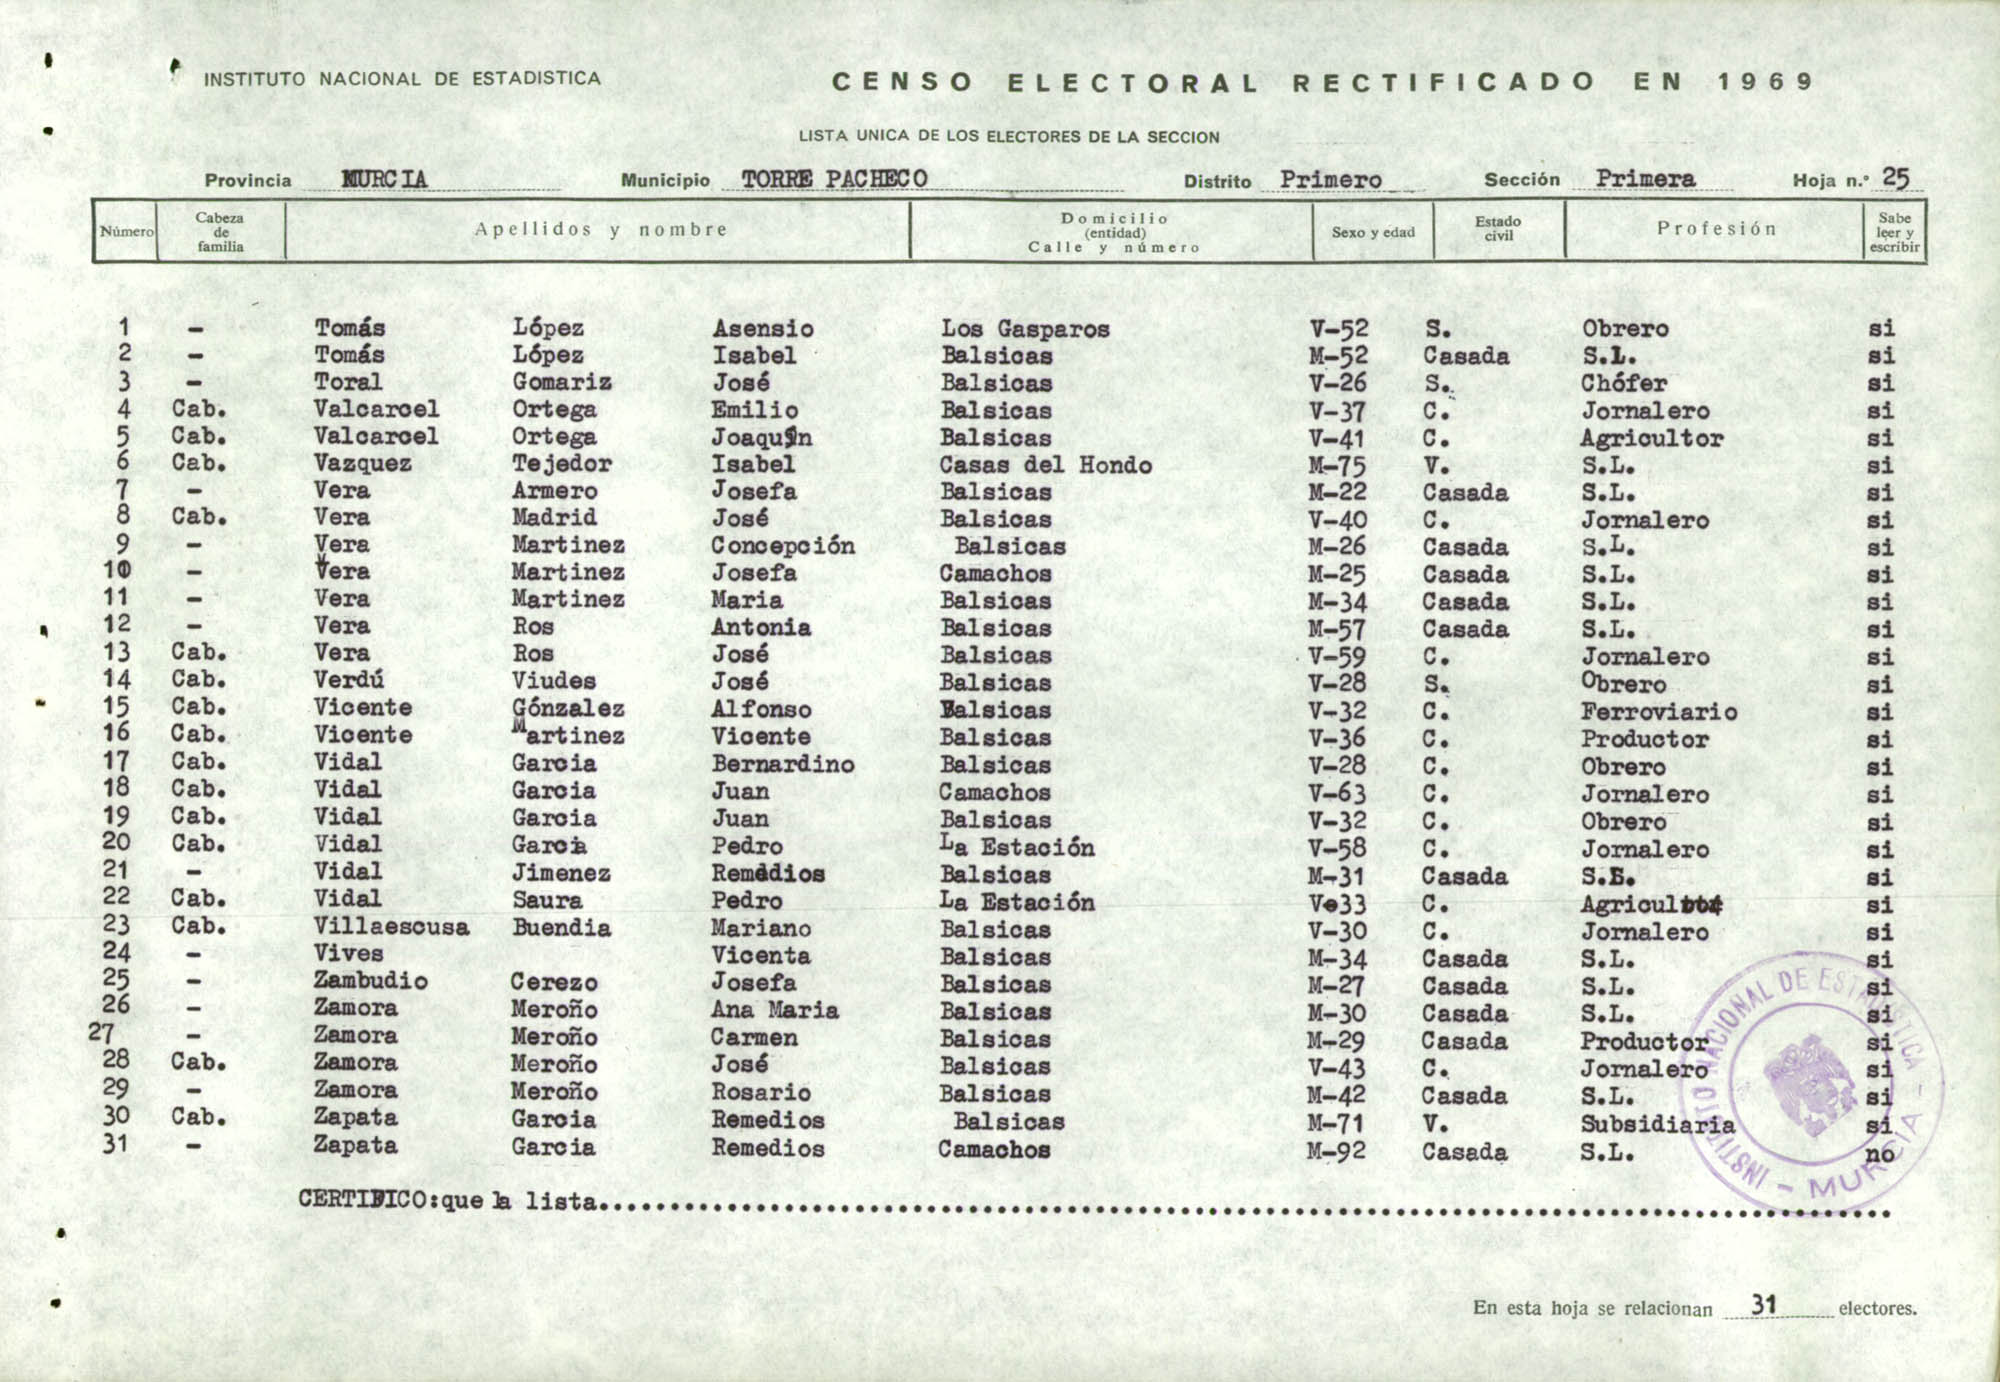 Censo electoral rectificado en 1969: listas definitivas de Torre Pacheco, Distrito 1º, sección 1ª.